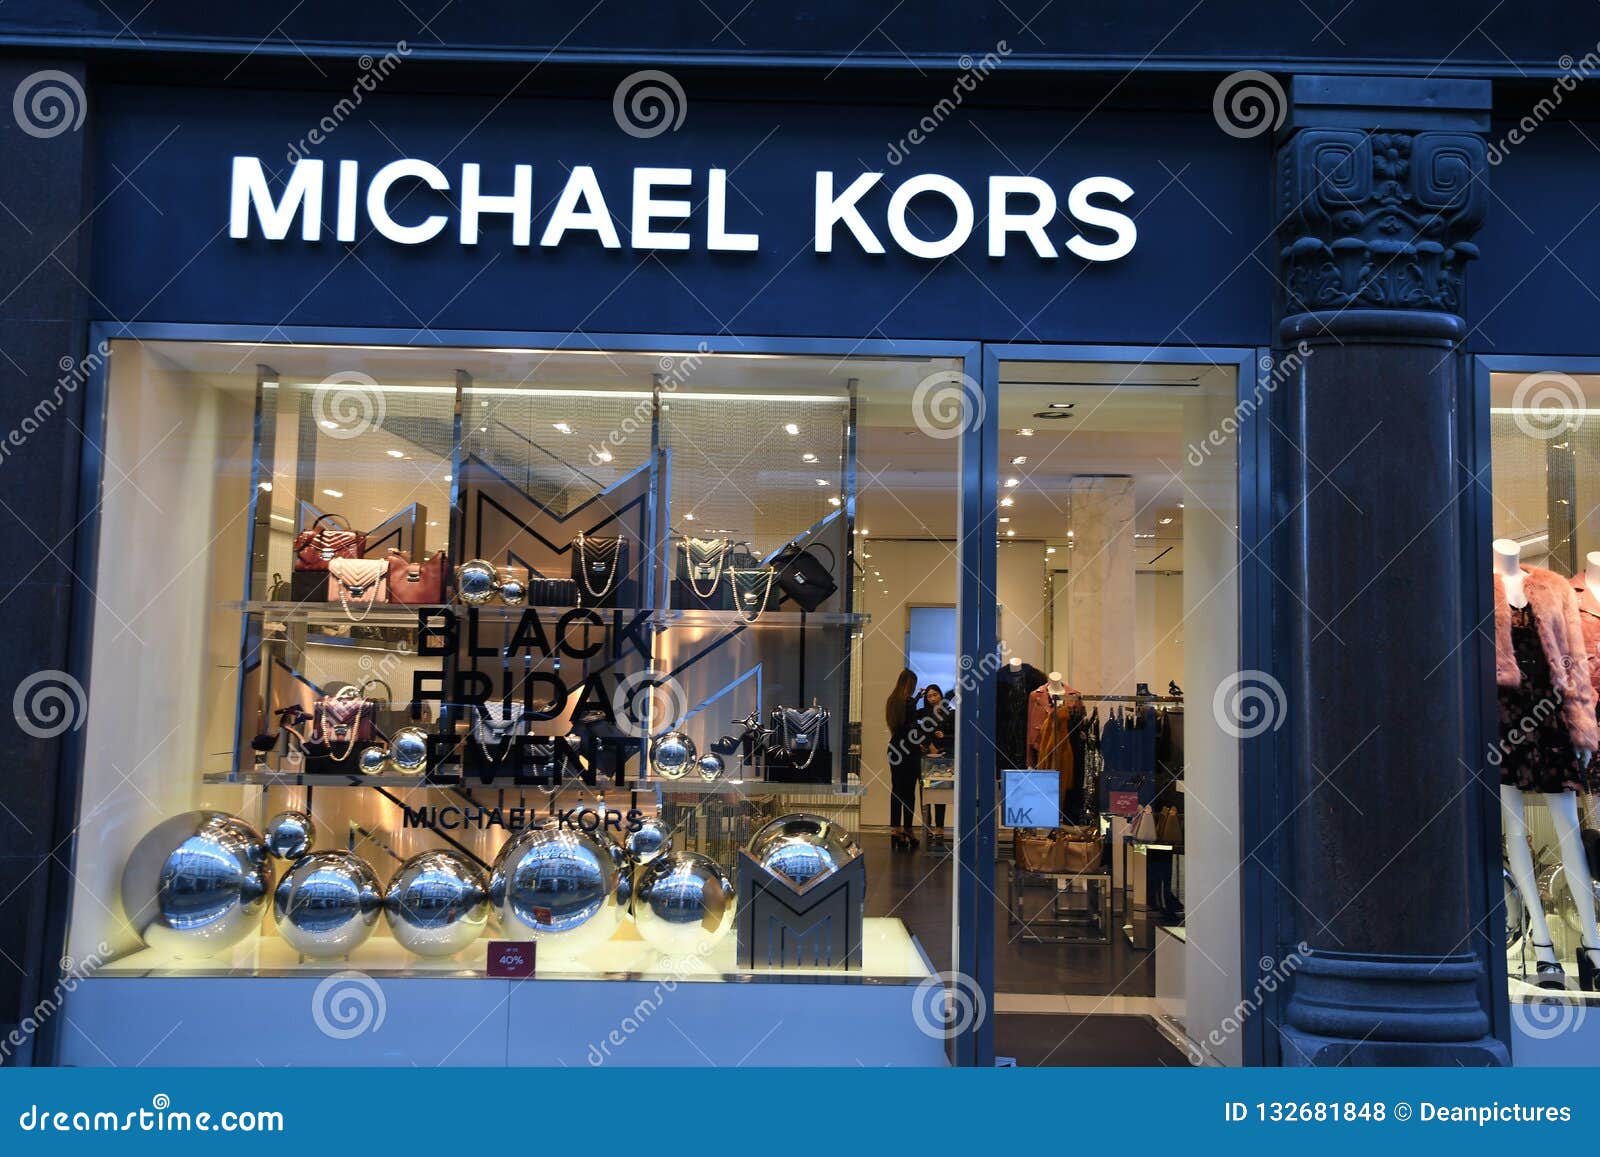 BLACK on MICHAEL KORS STORE in DENMARK Editorial Stock Photo - Image of finanse, denmark: